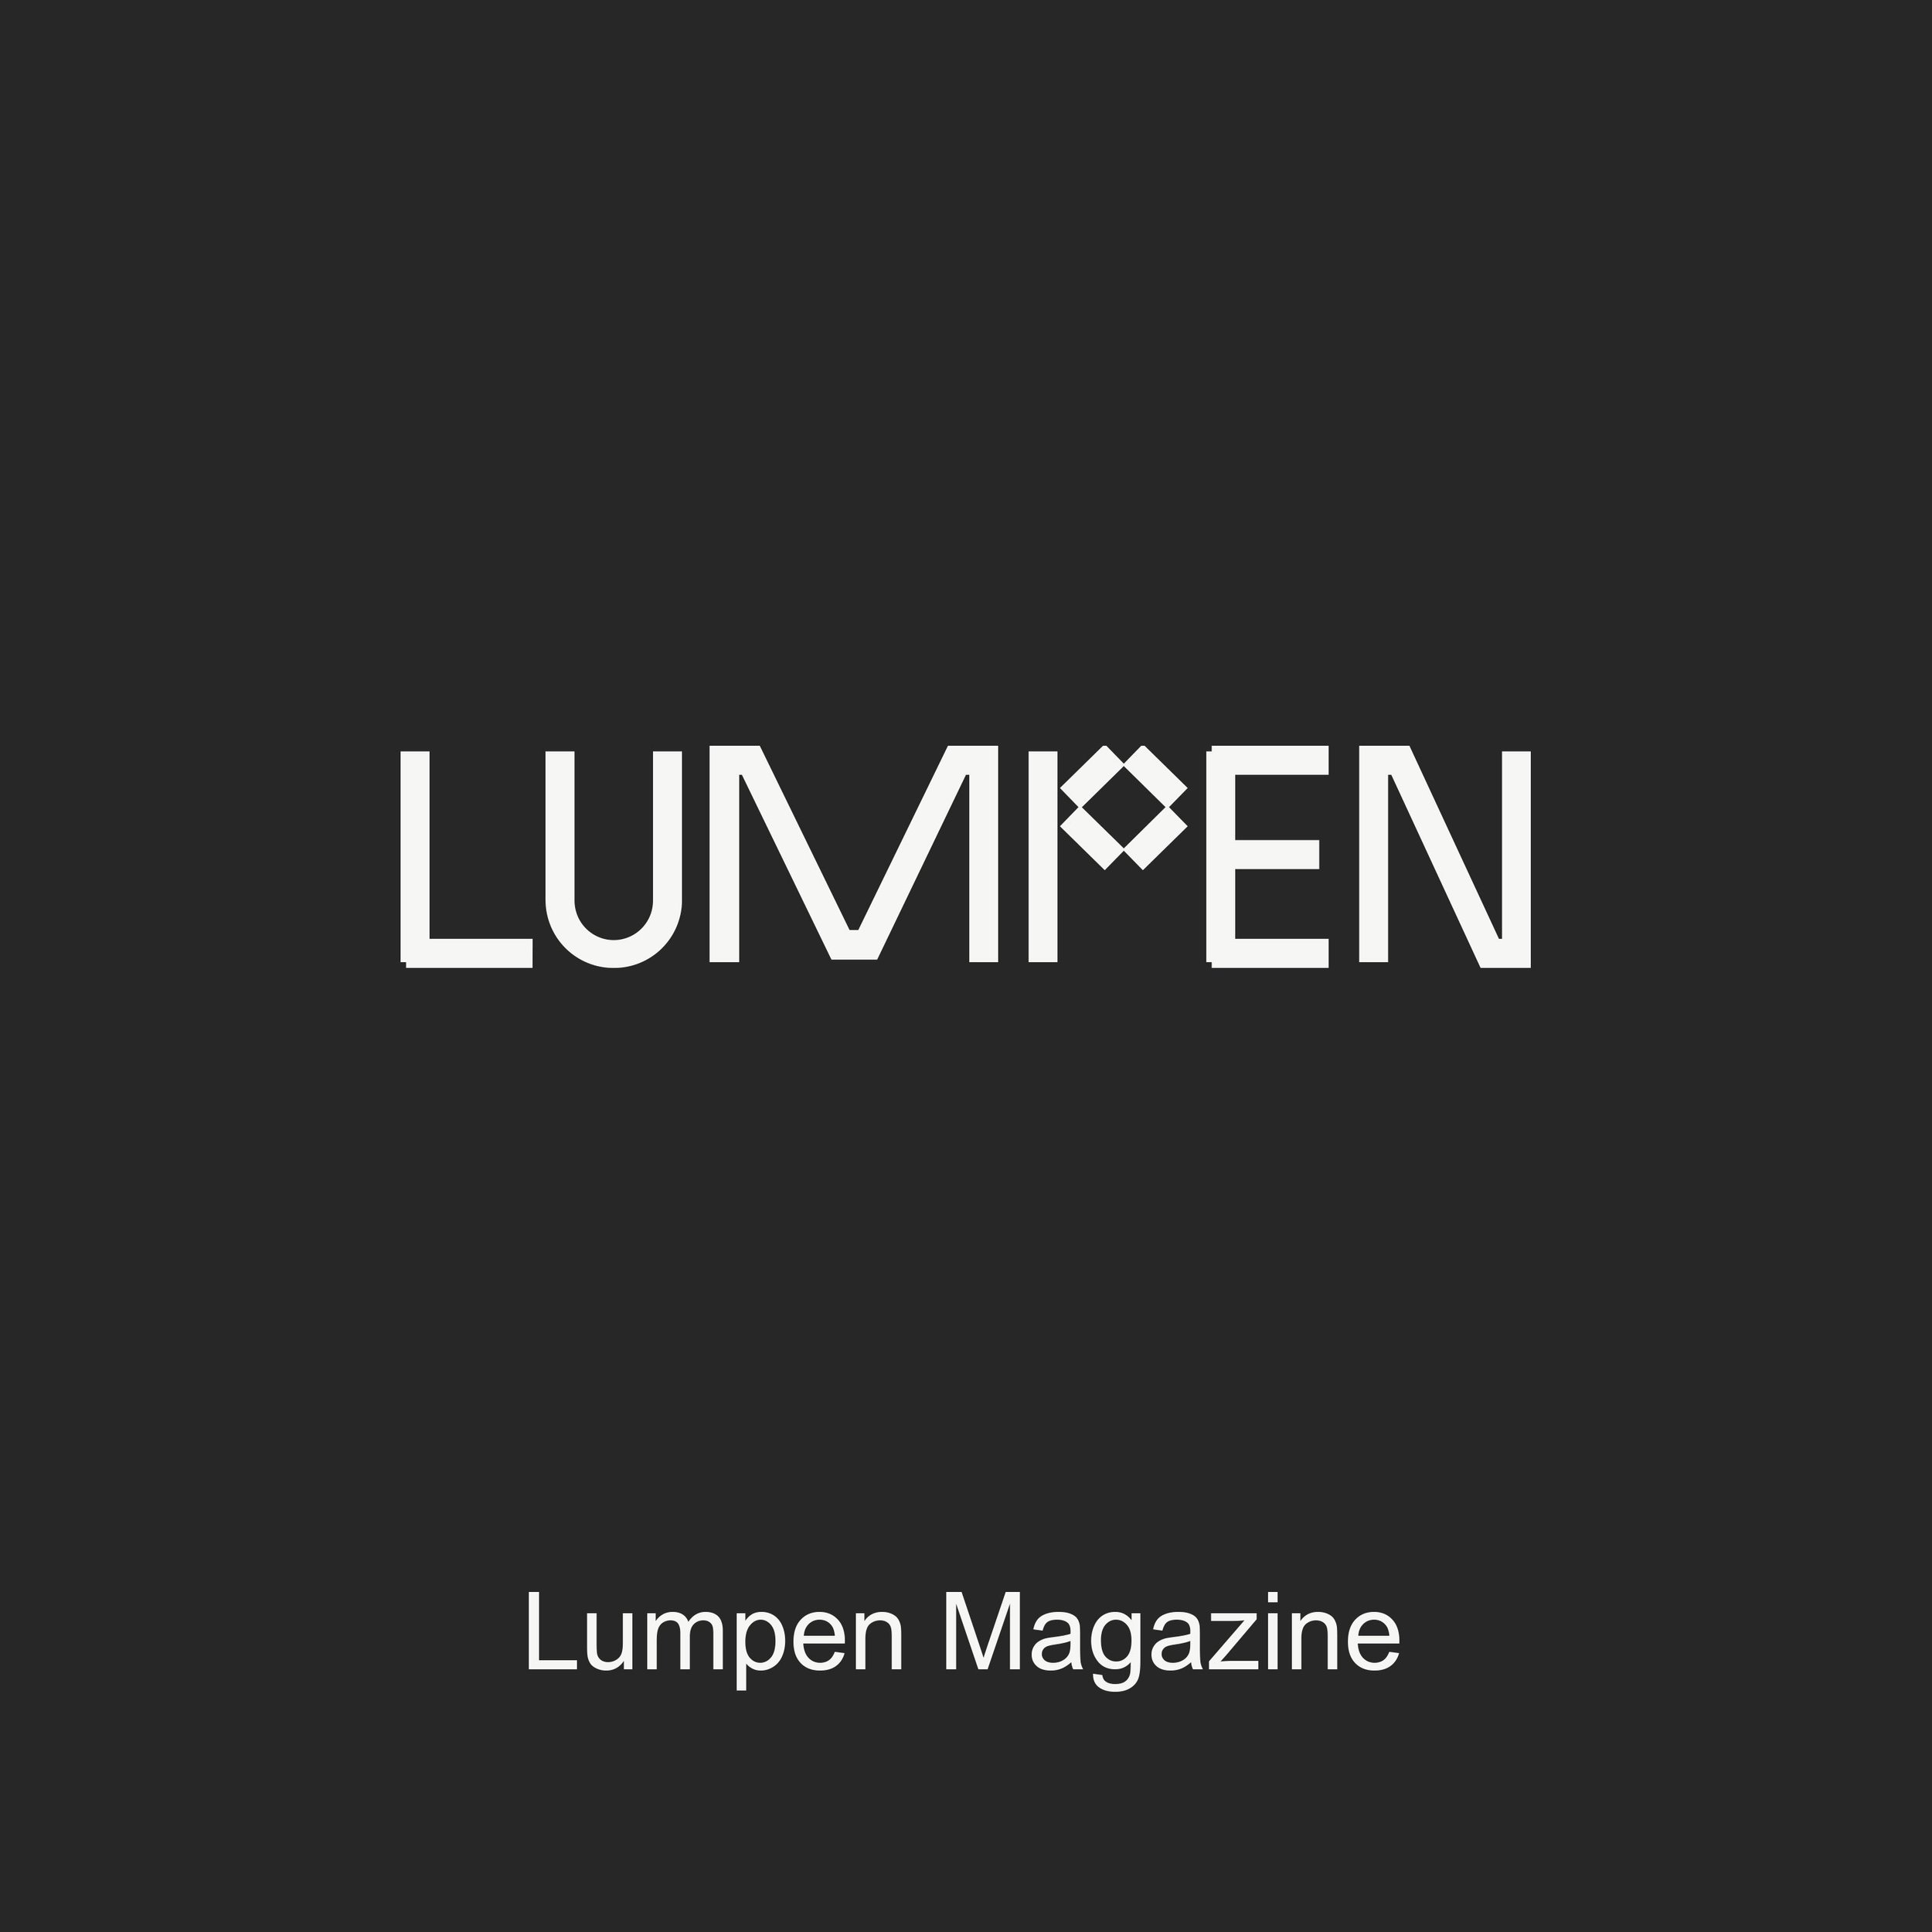 Lumpen Magazine